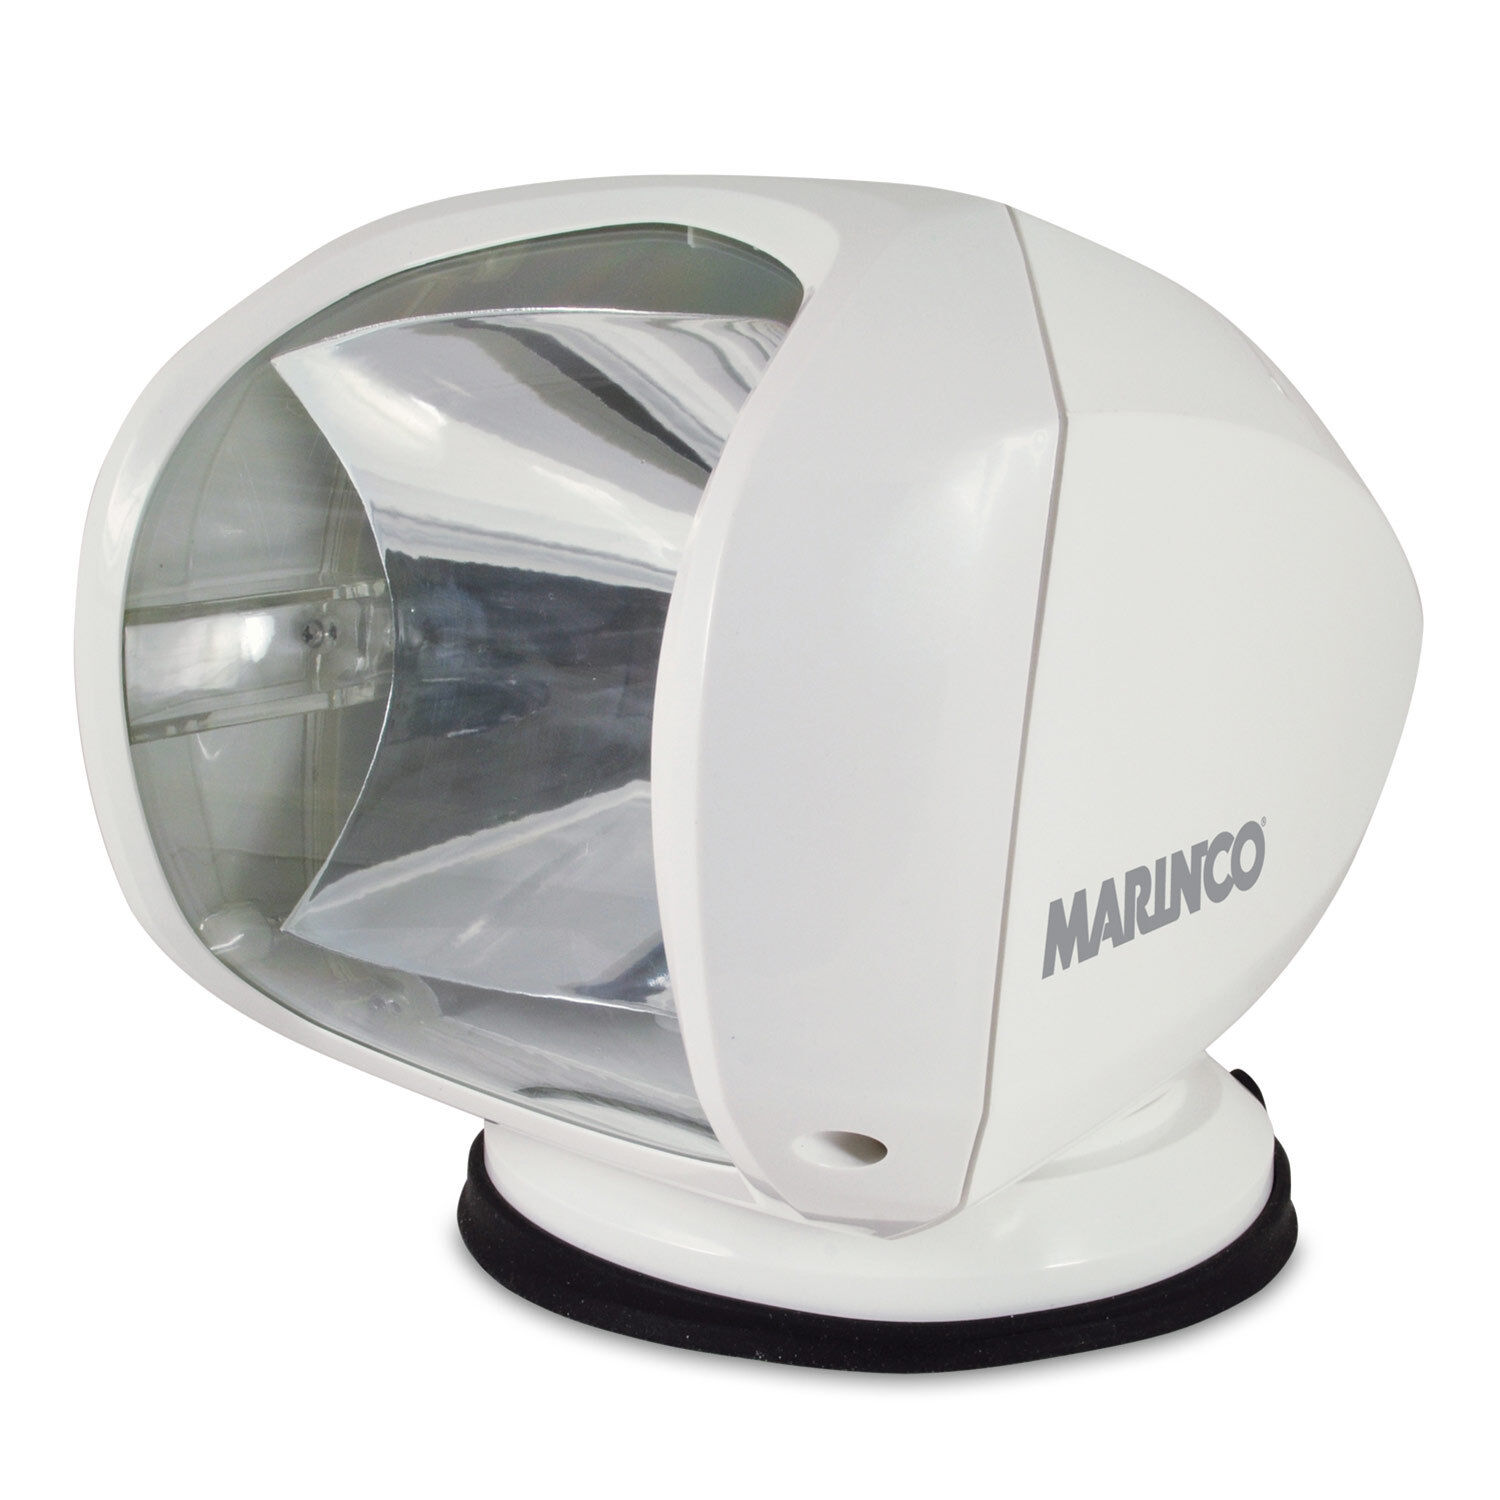 MARINCO Precision Spotlight, White Wireless Remote Spotlight, 12